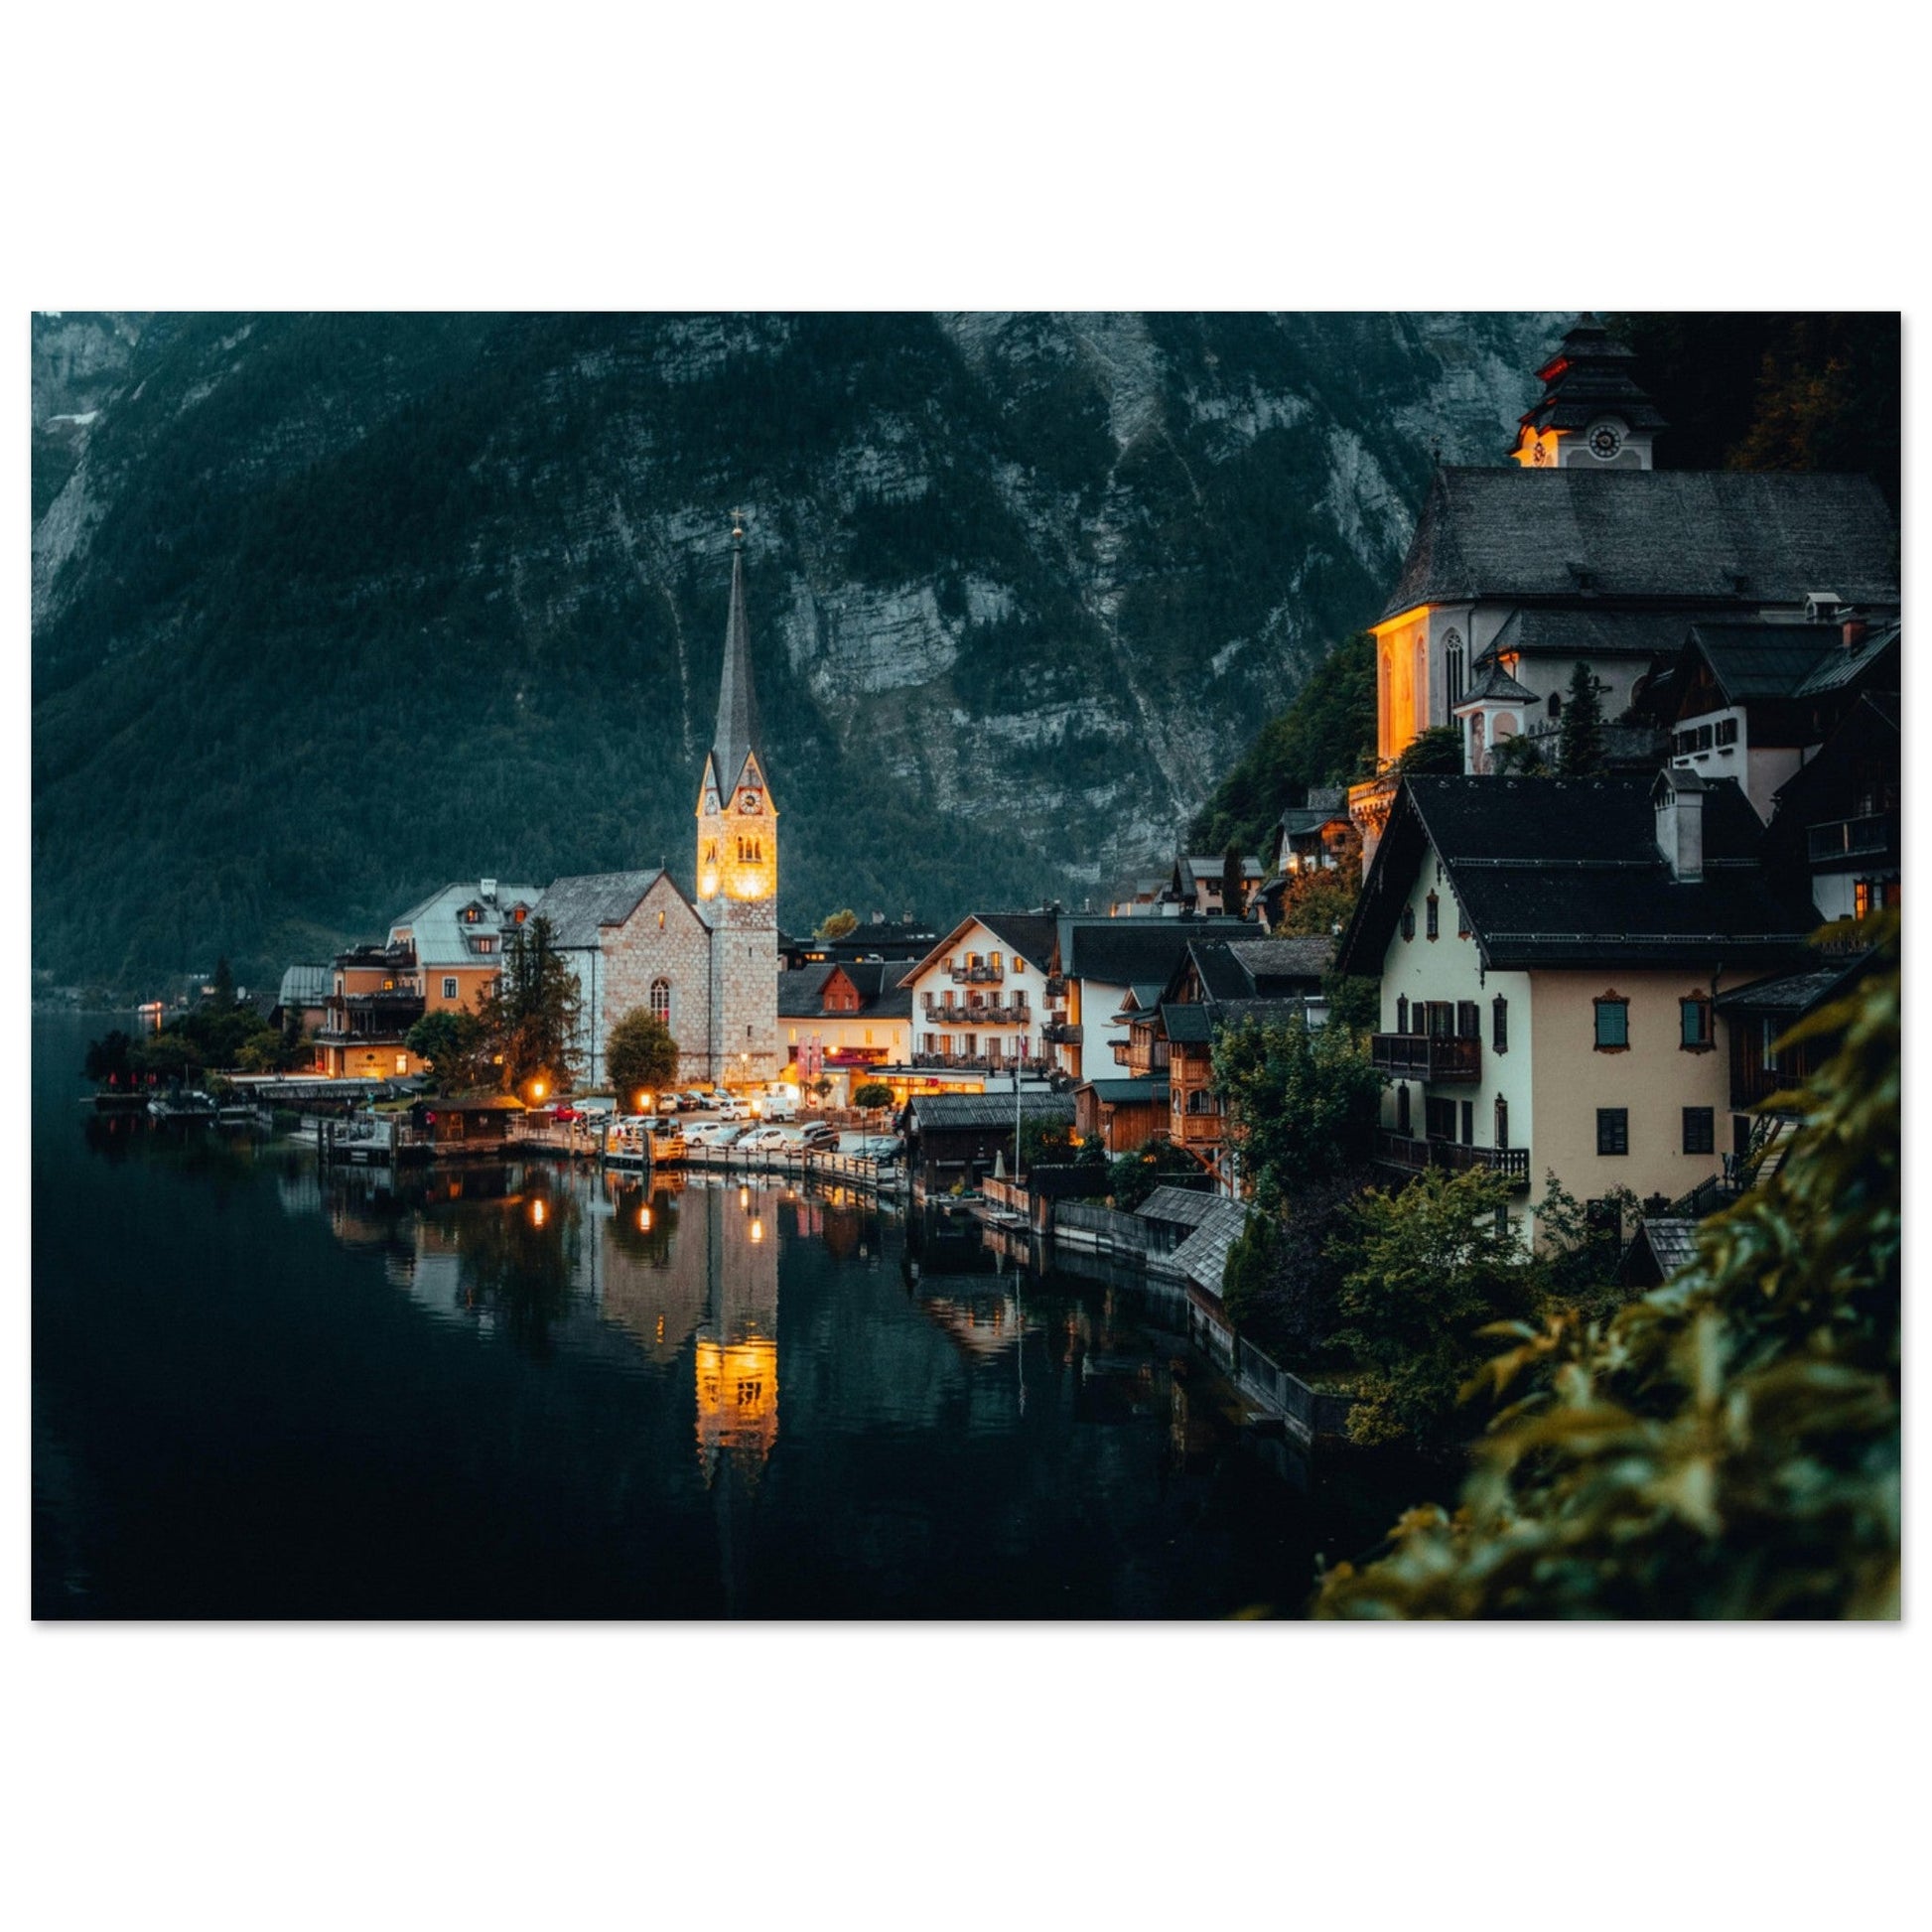 Vente Photo de Hallstatt de nuit, Autriche #2 - Tableau photo paysage